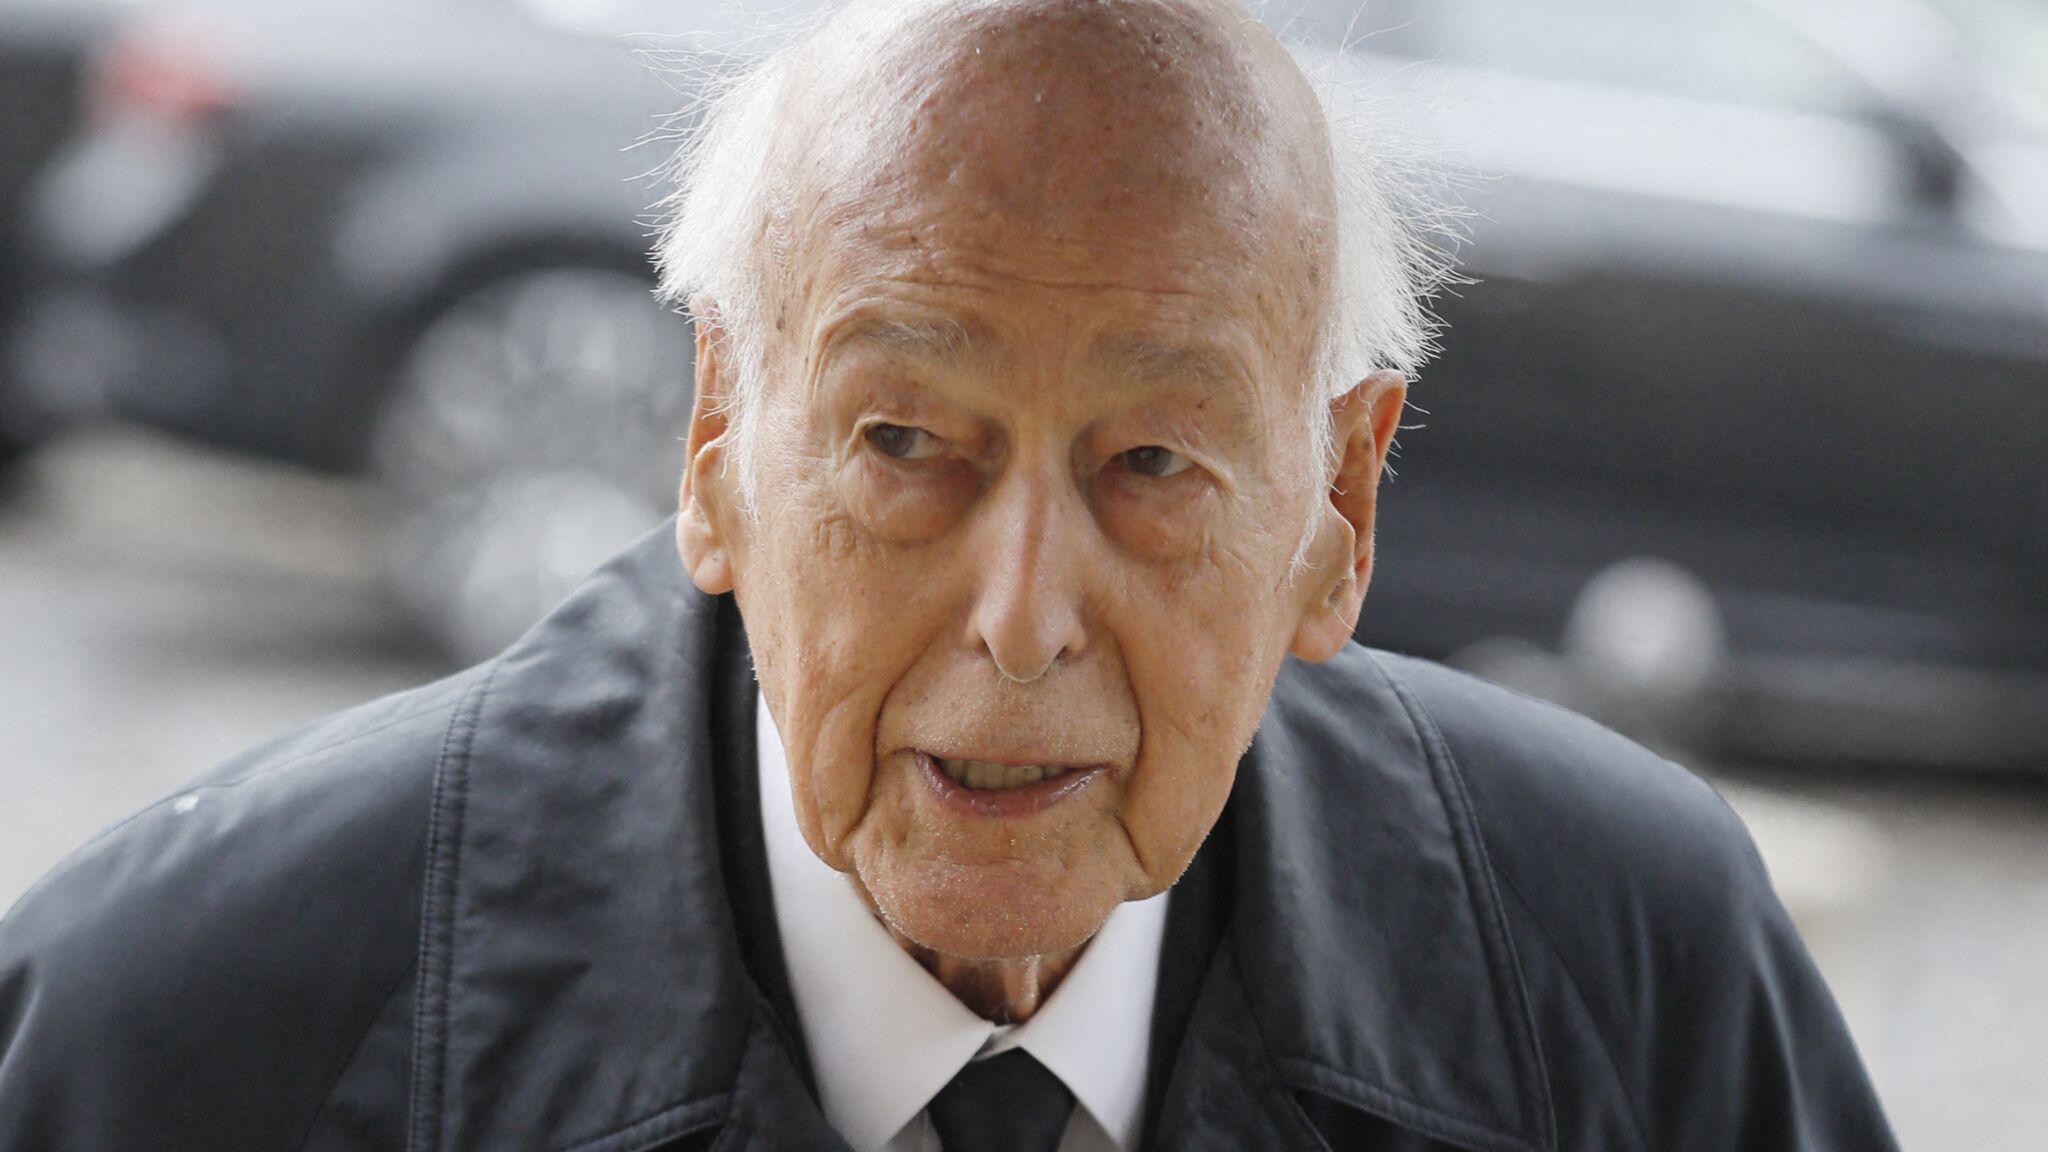 Valéry Giscard d’Estaing est décédé à l’âge de 94 ans